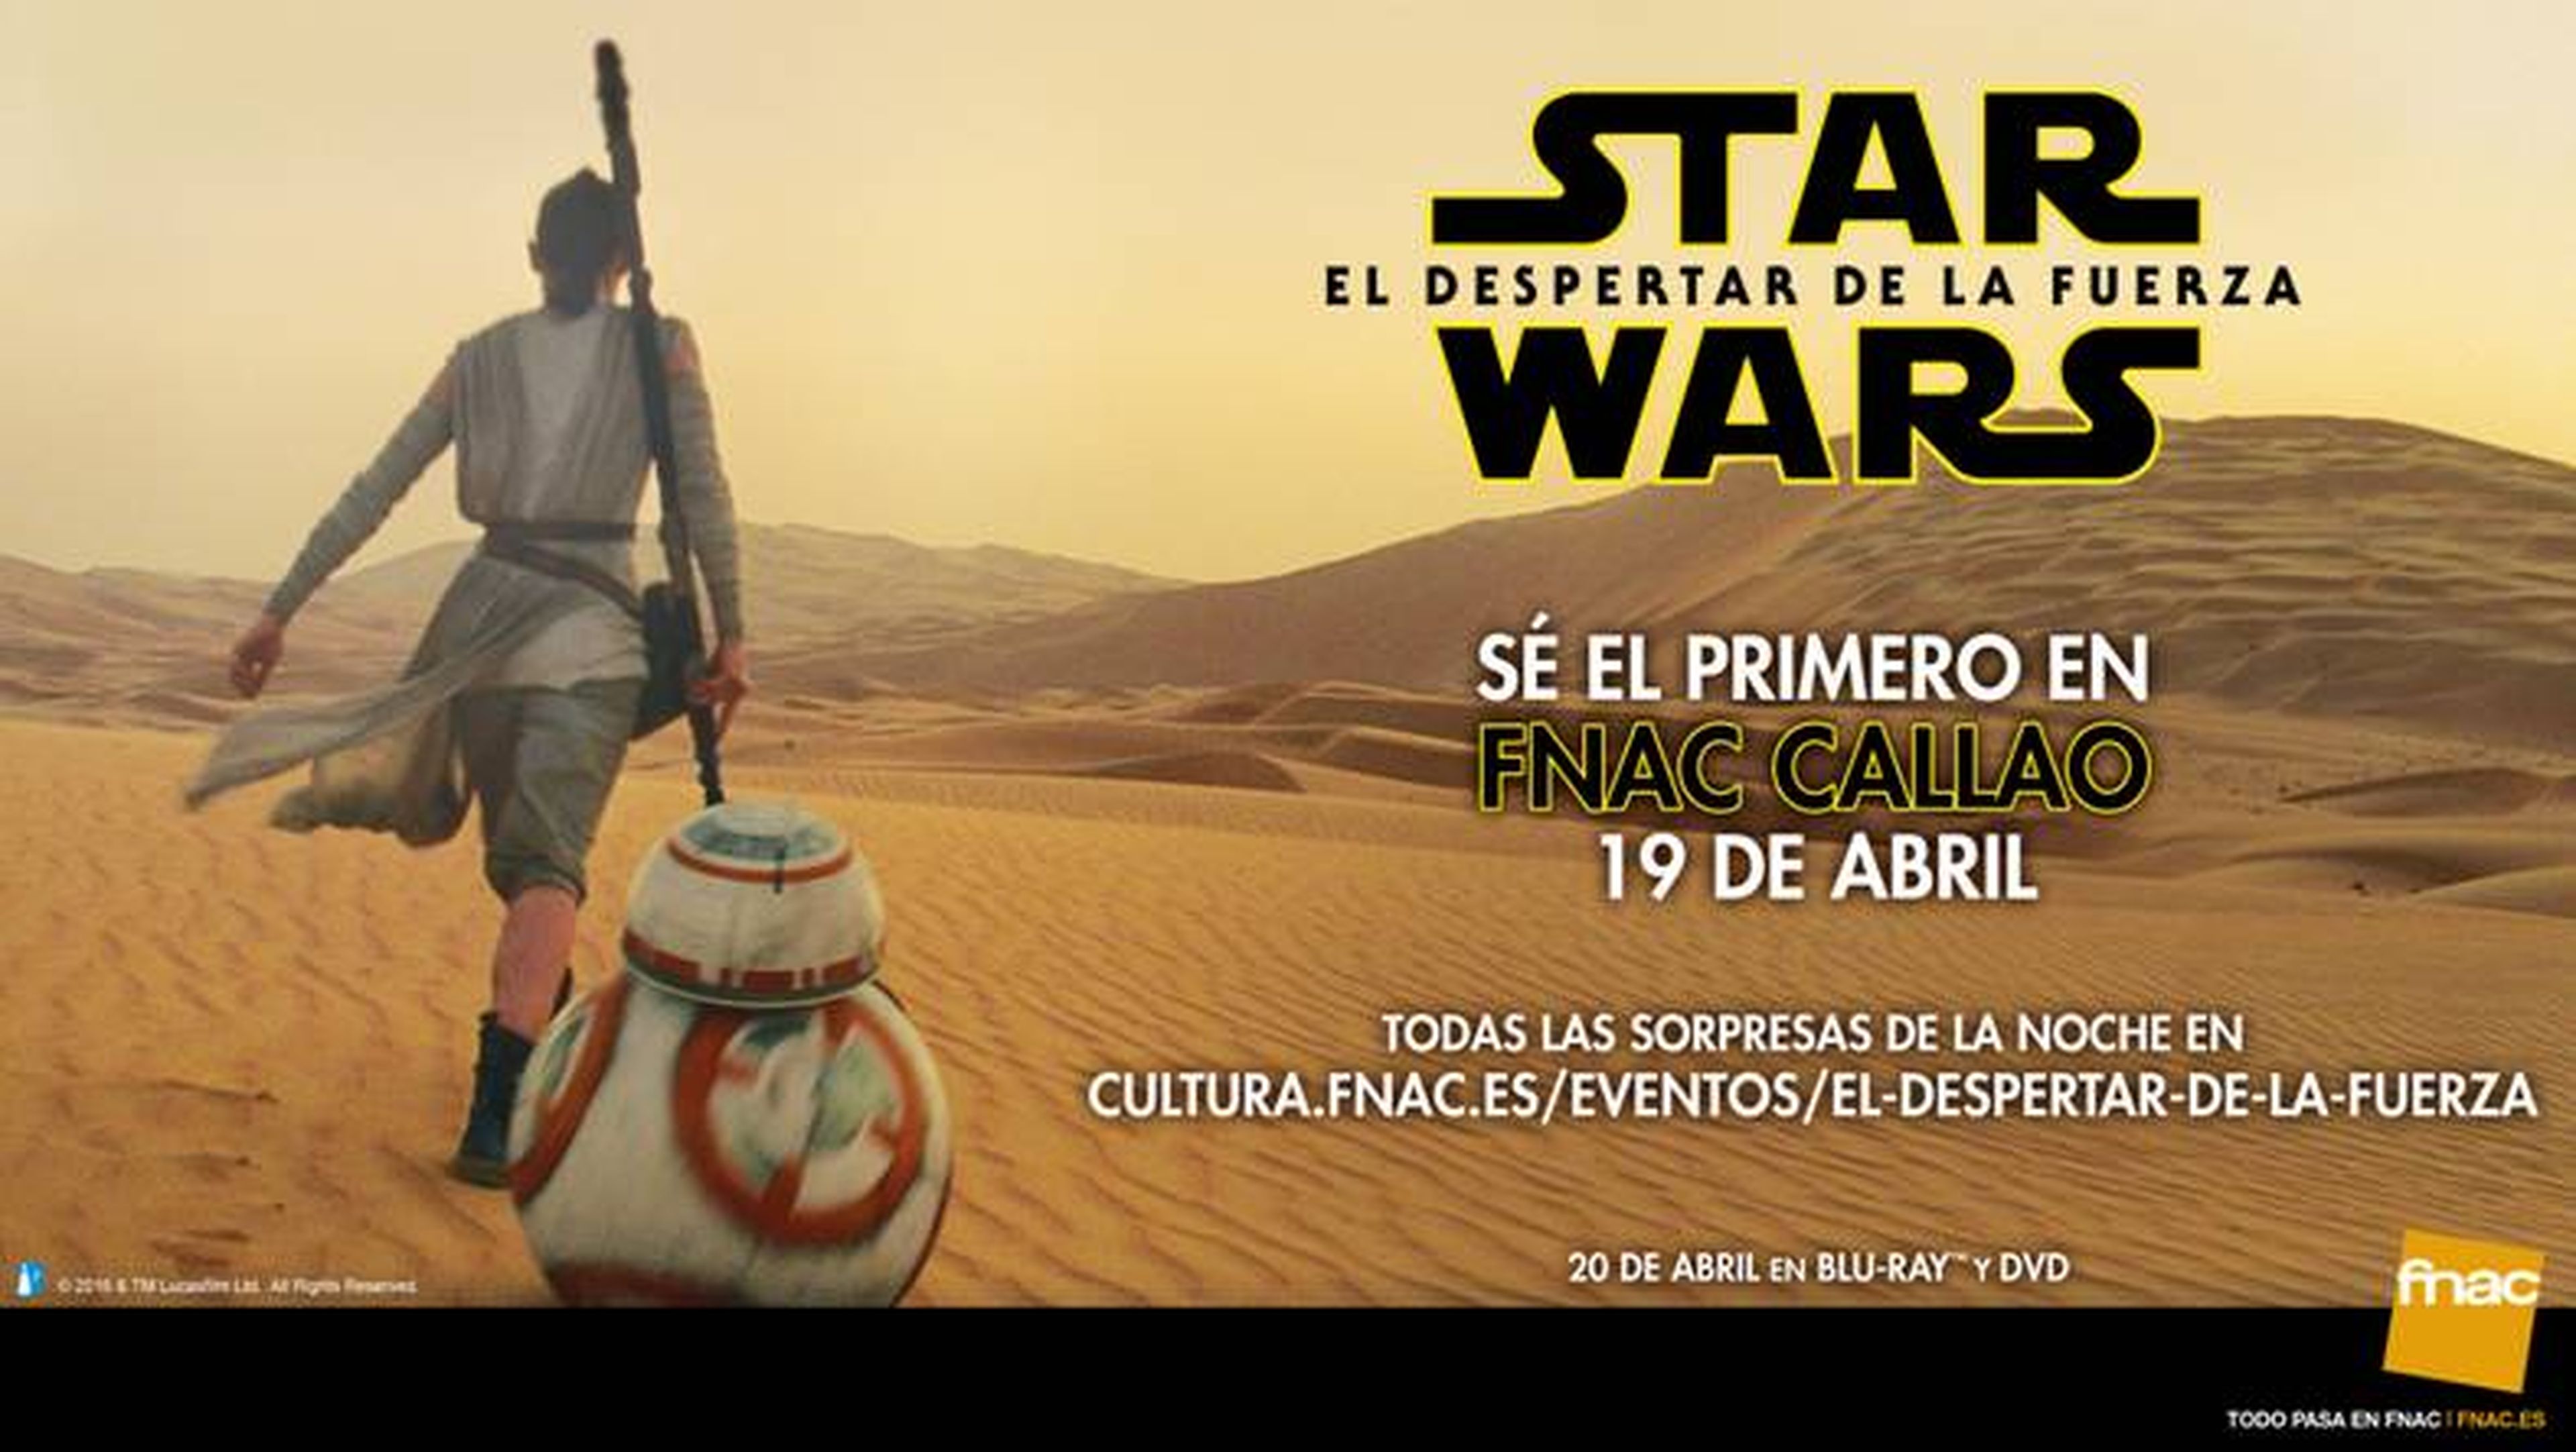 Star Wars 7 - Los primeros que compren el DVD o Blu-Ray se llevarán Star Wars Battlefront